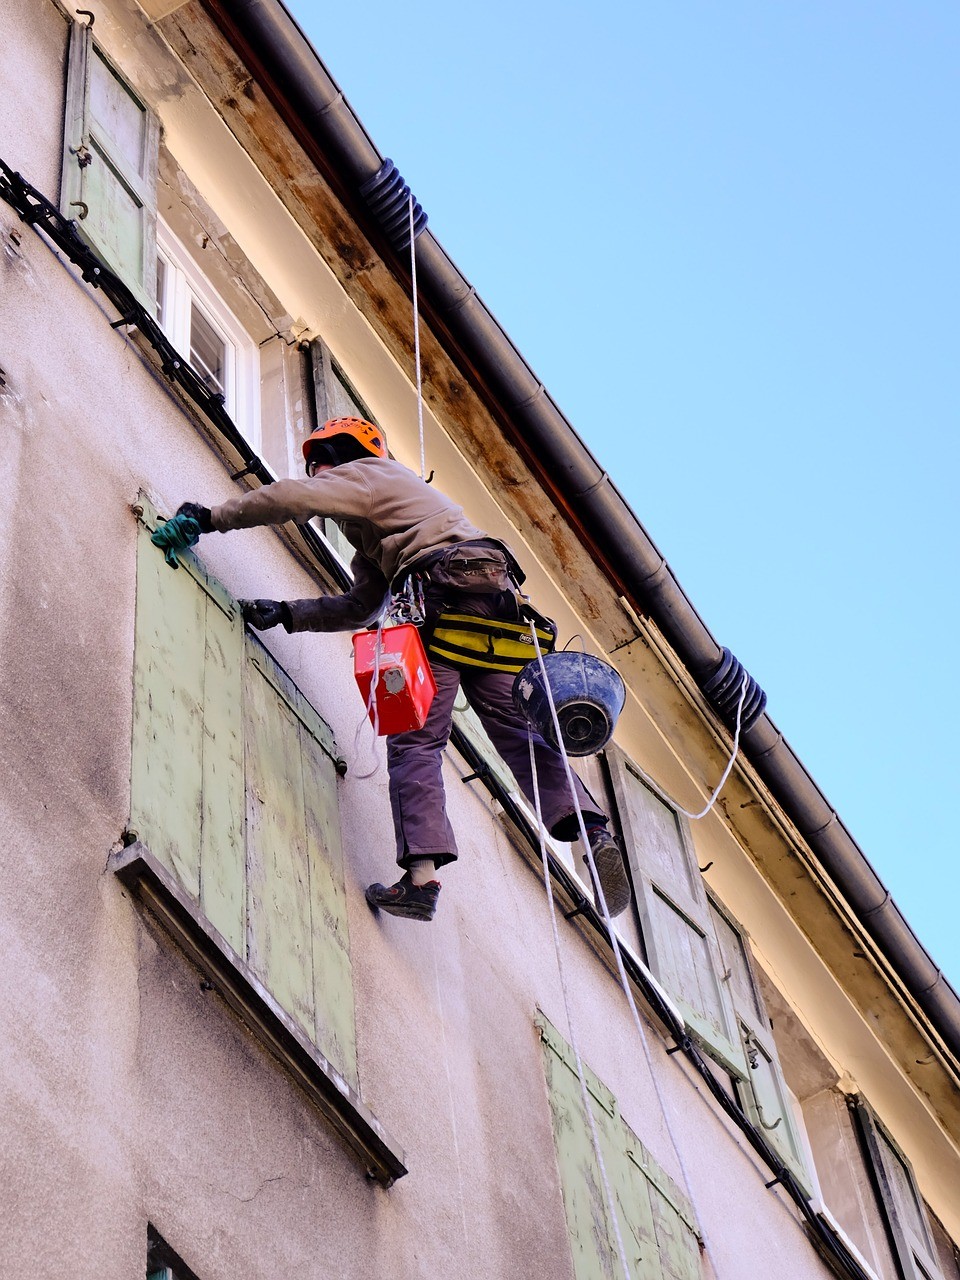 Remplacer ses fenêtres en Savoie : sachez les démarches administratives